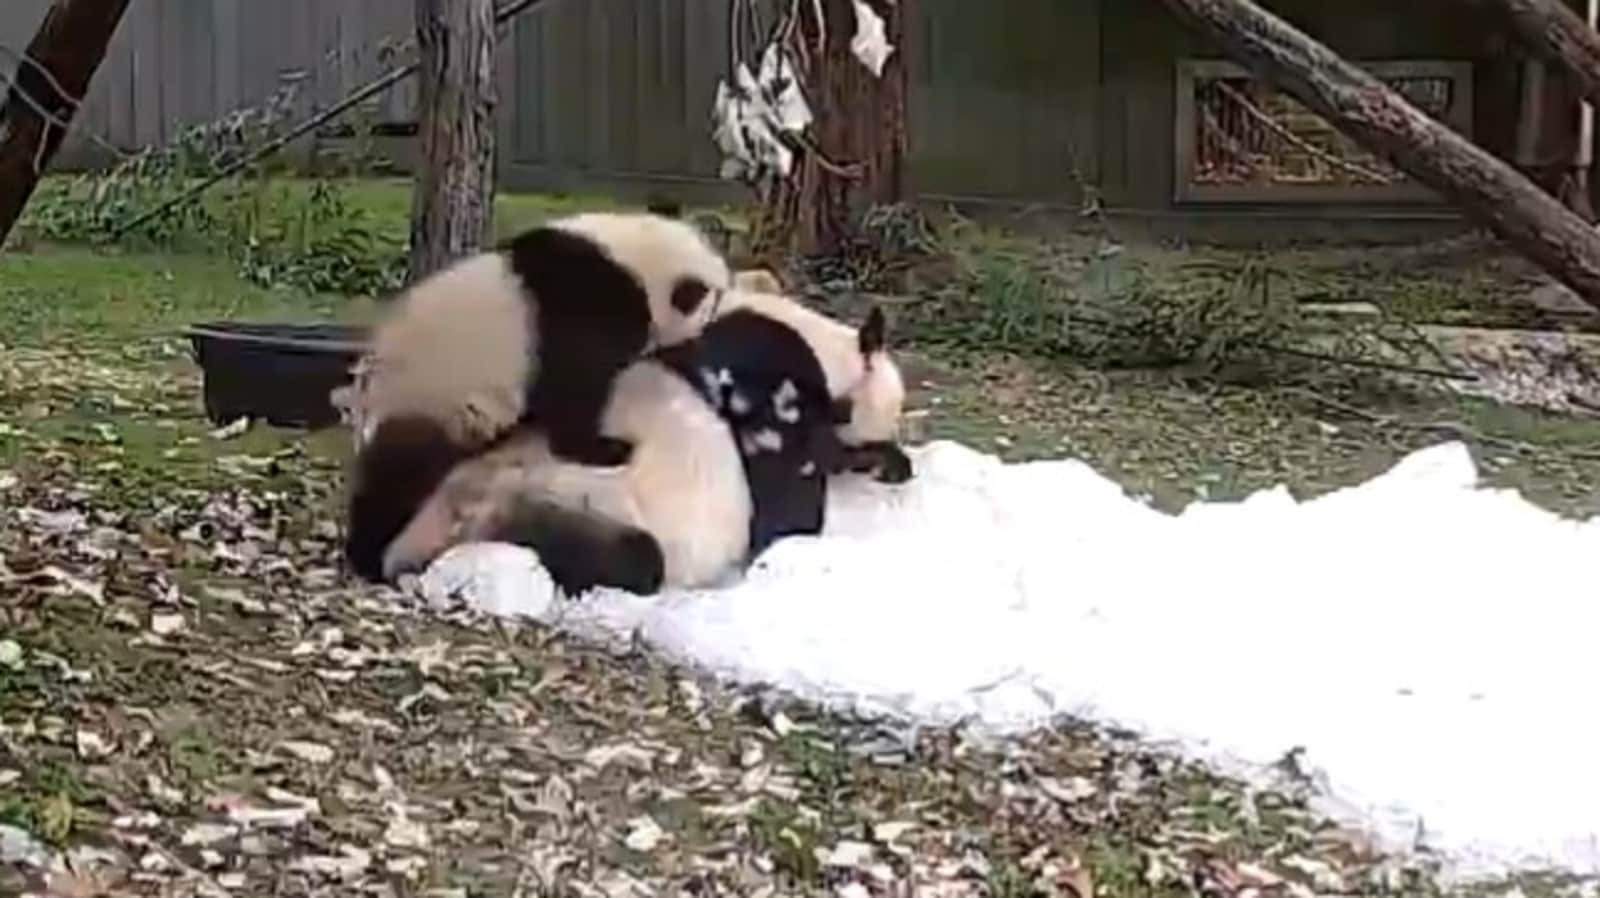 giant panda cubs cute